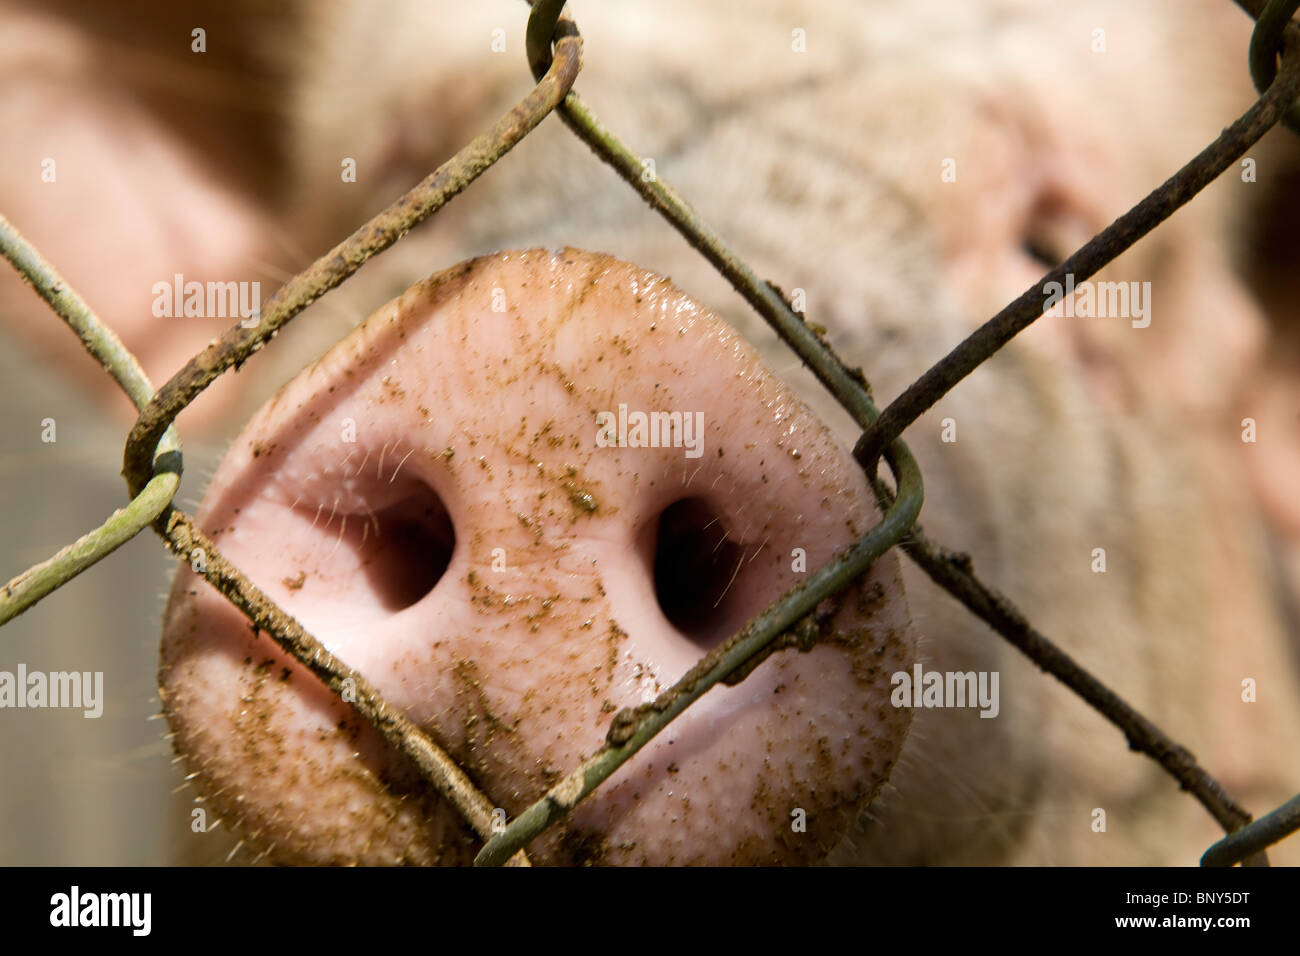 Cochon de ferme à la plume, close-up de museau Banque D'Images